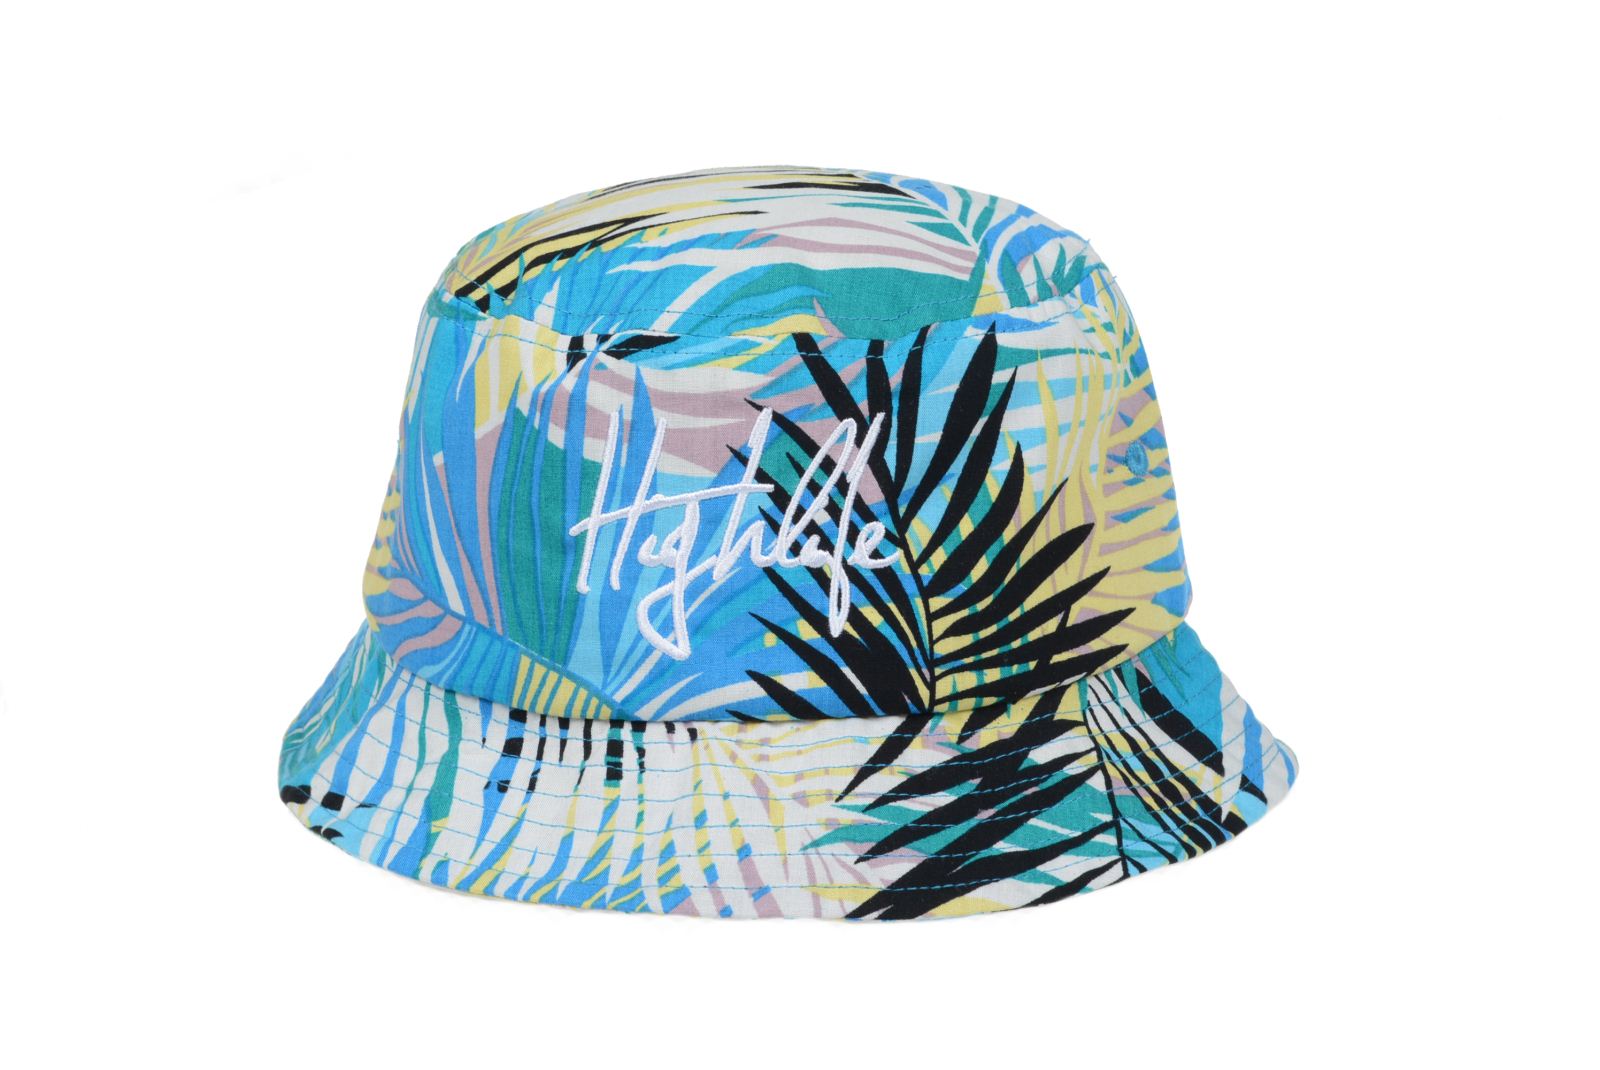 2014款夏威夷风格沙滩帽